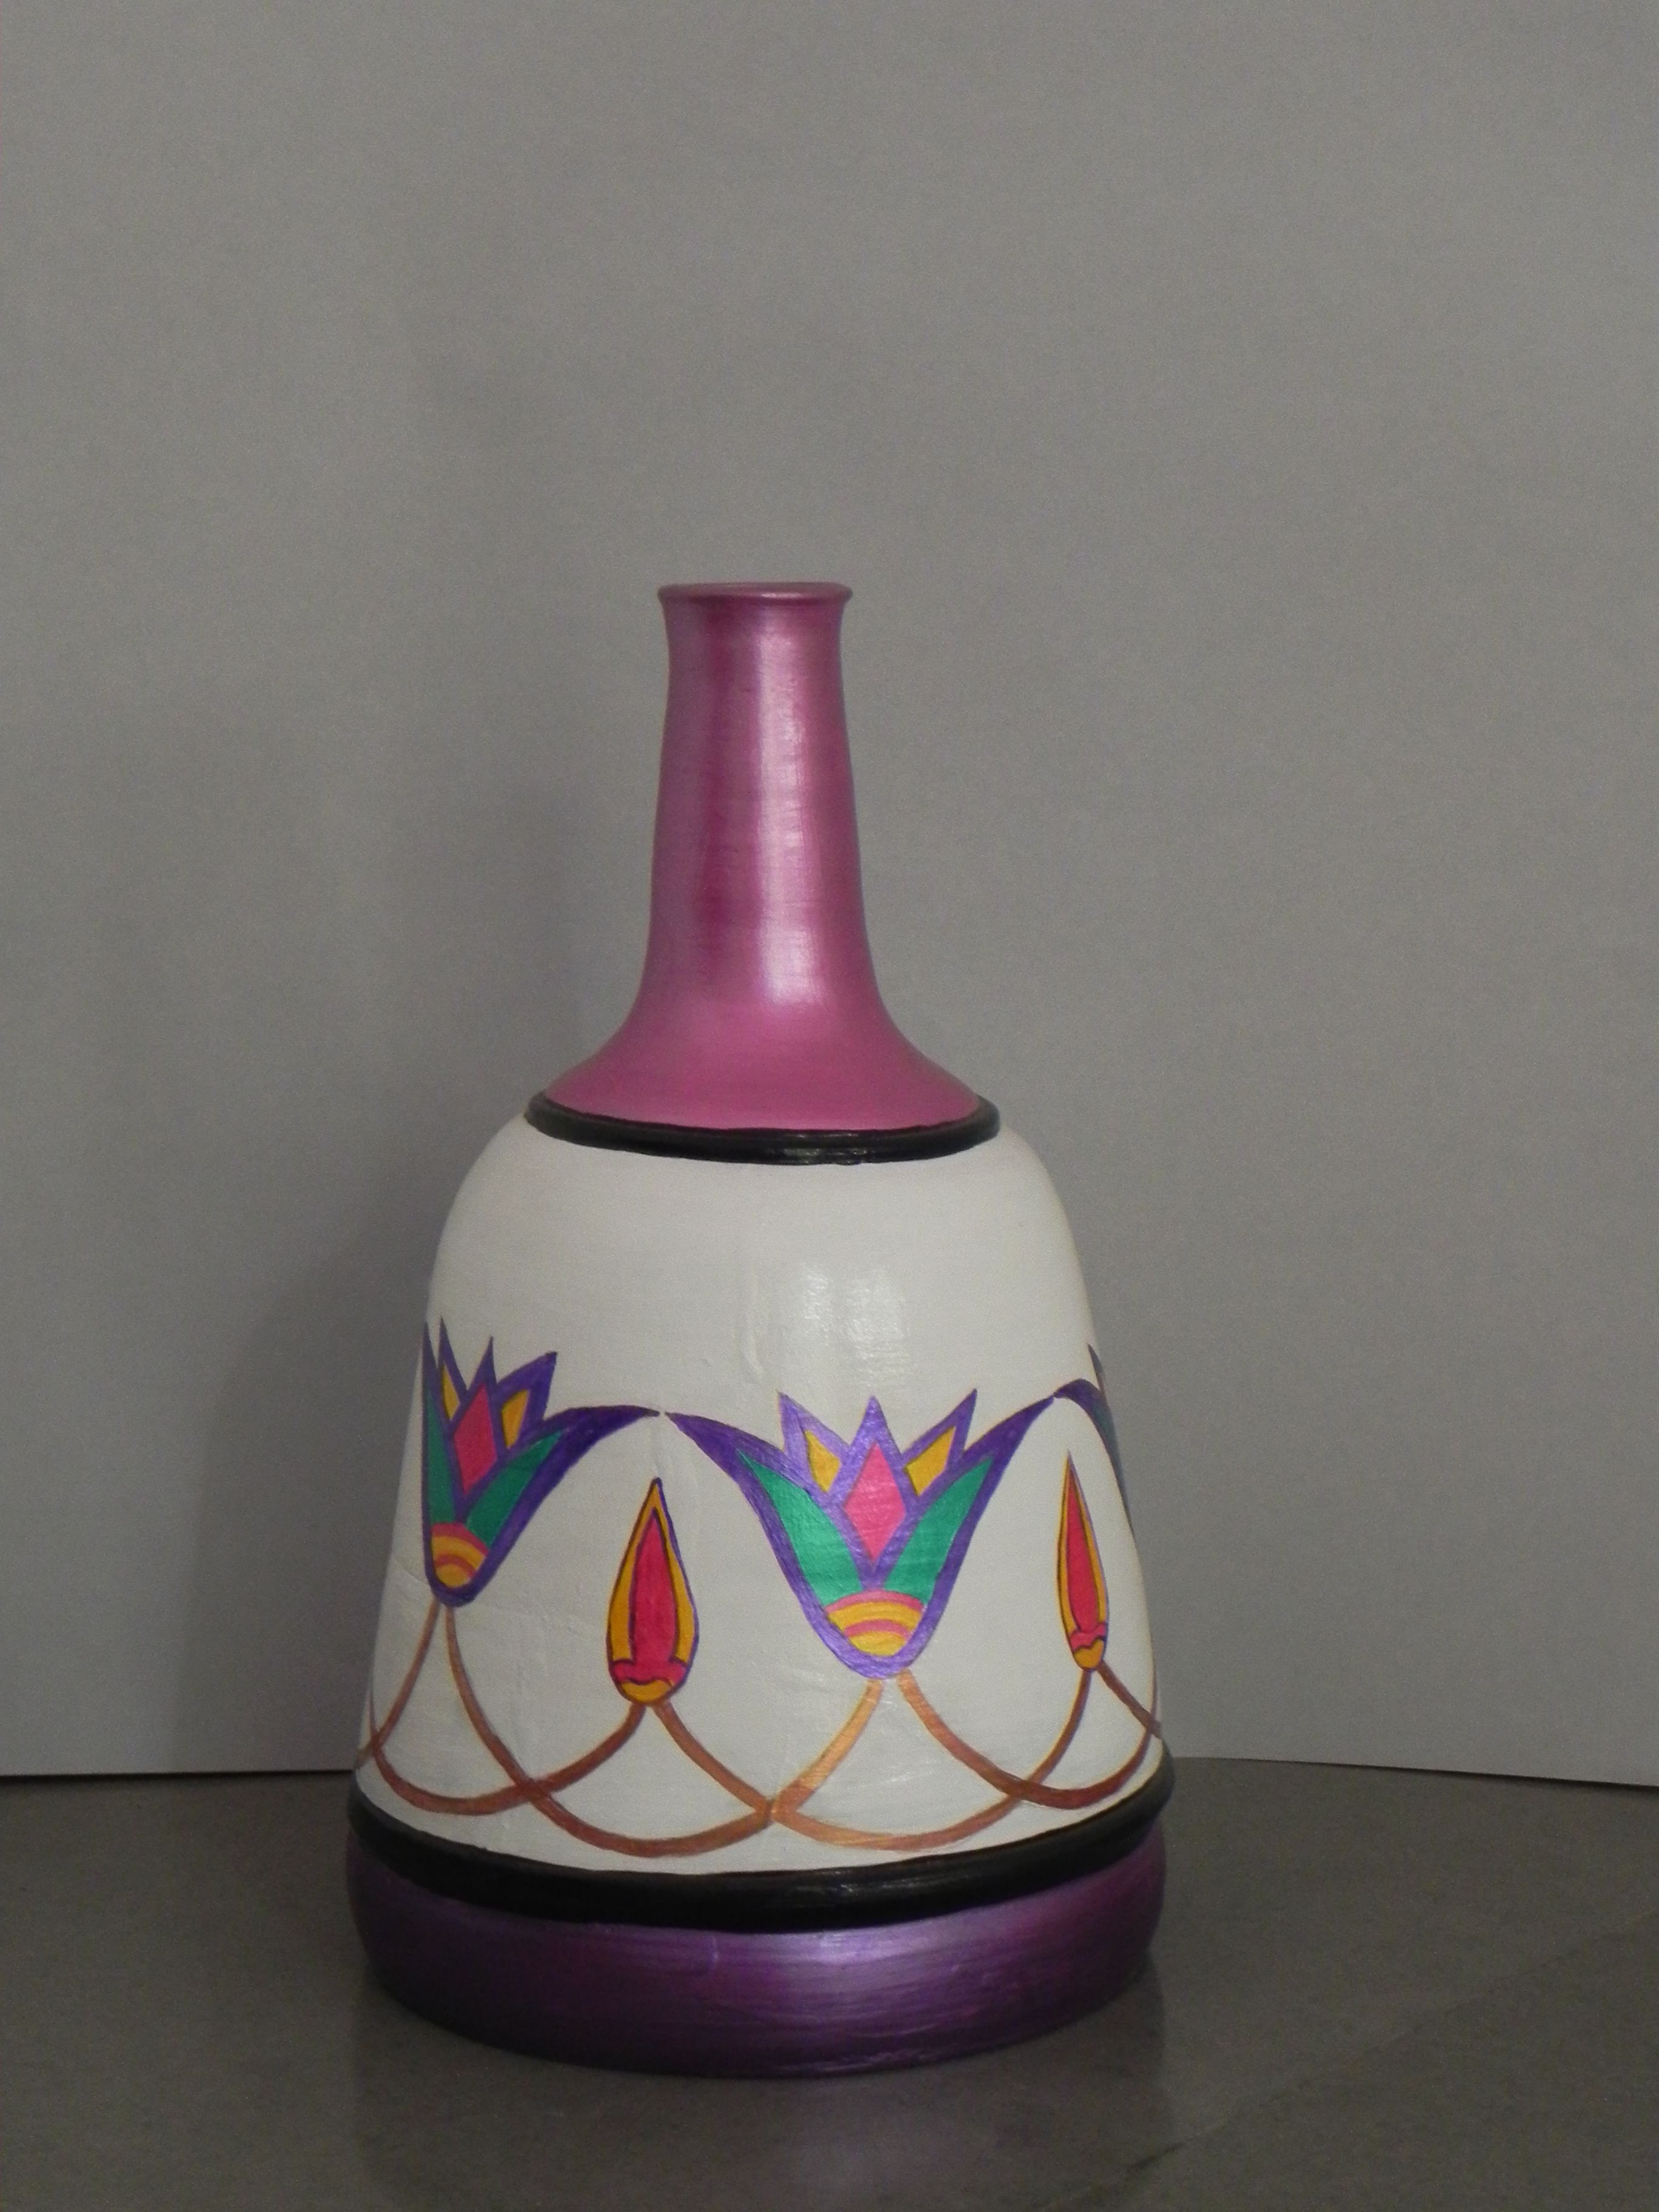 27 Popular Pink Ceramic Vase 2024 free download pink ceramic vase of egyptian style pot floral design in egyptian style white background within egyptian style pot floral design in egyptian style white background pink neck violet bottom si